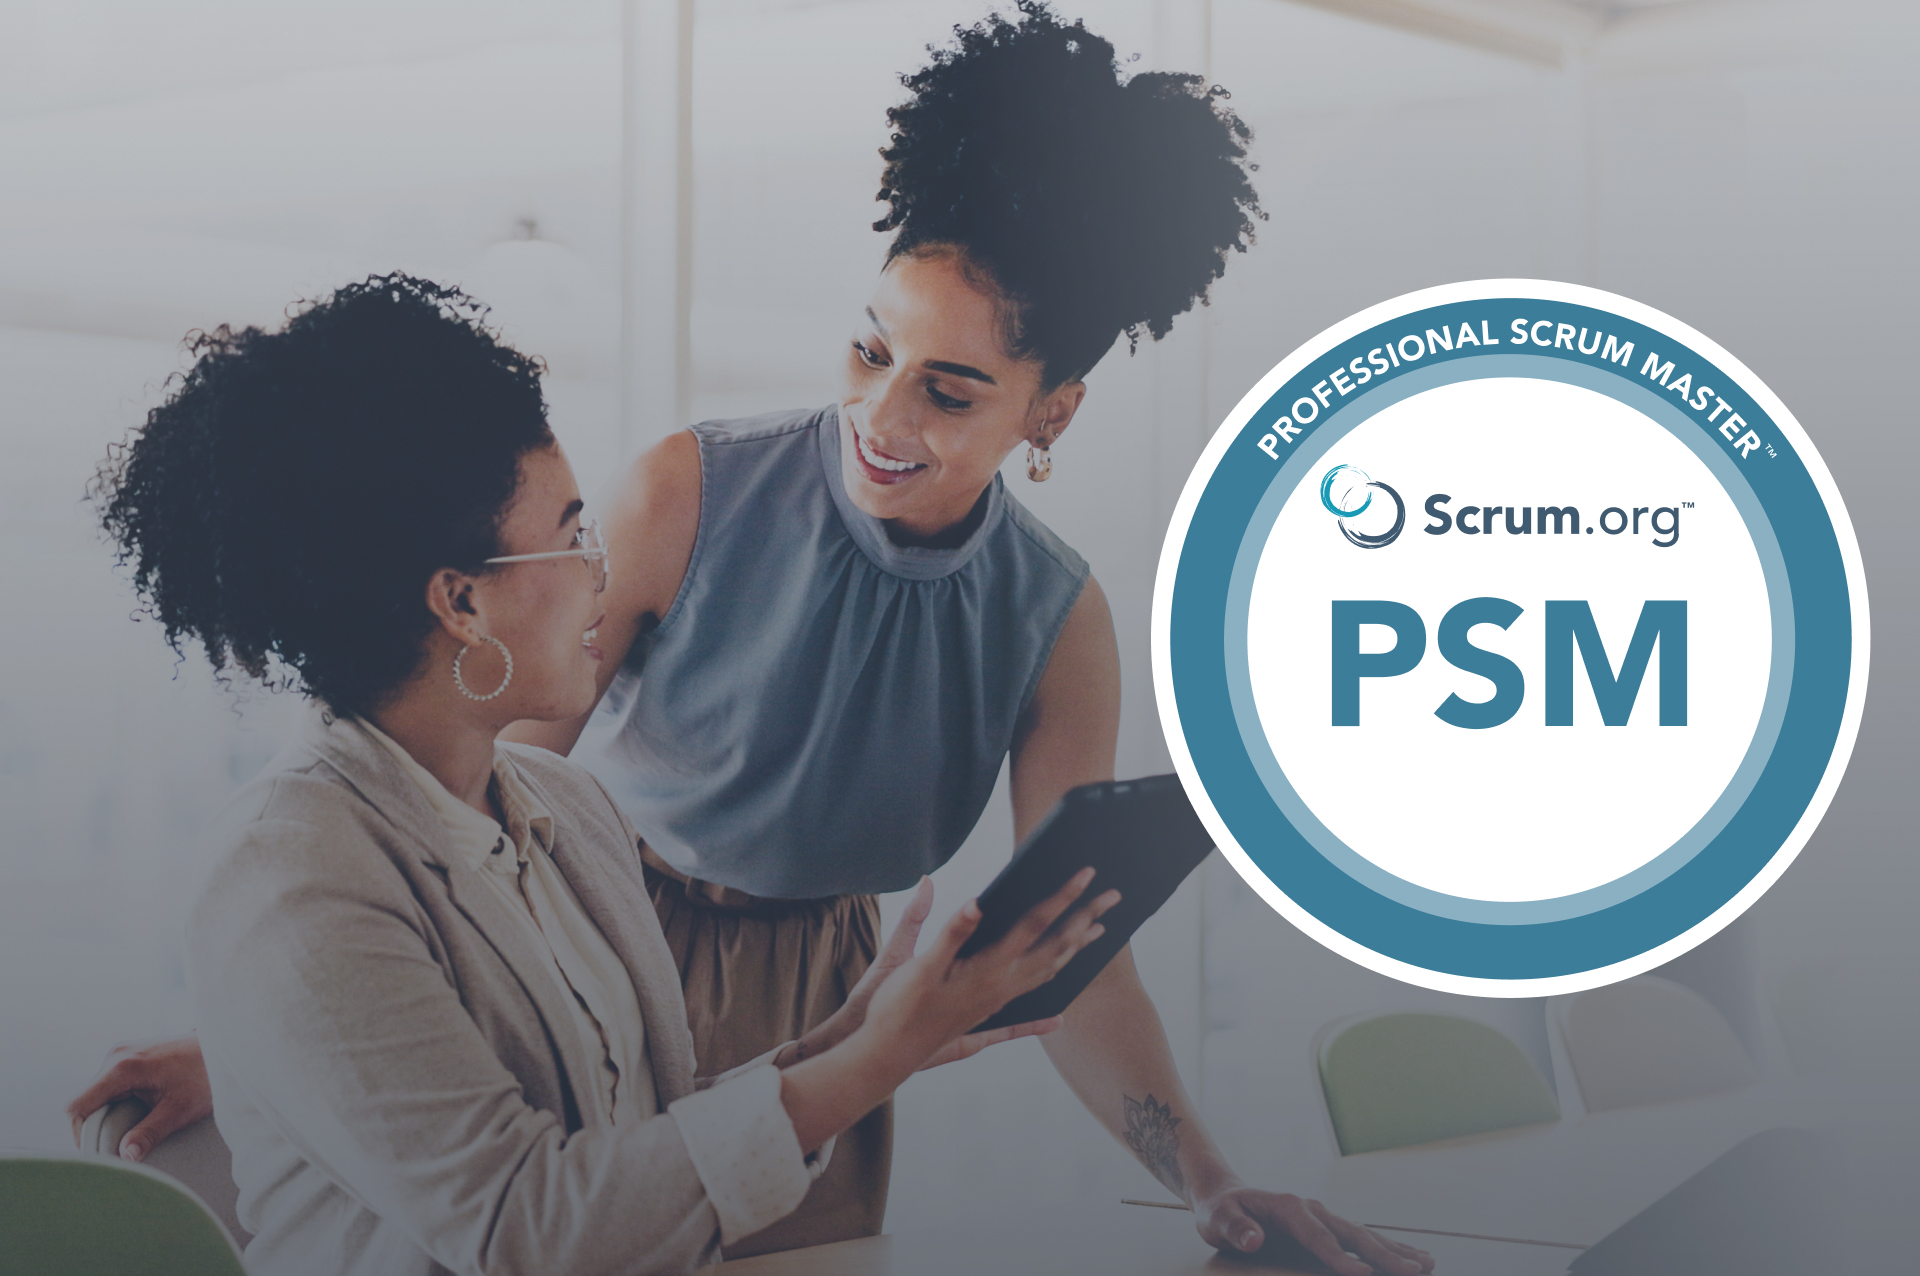 PSM - Professional Scrum Master™